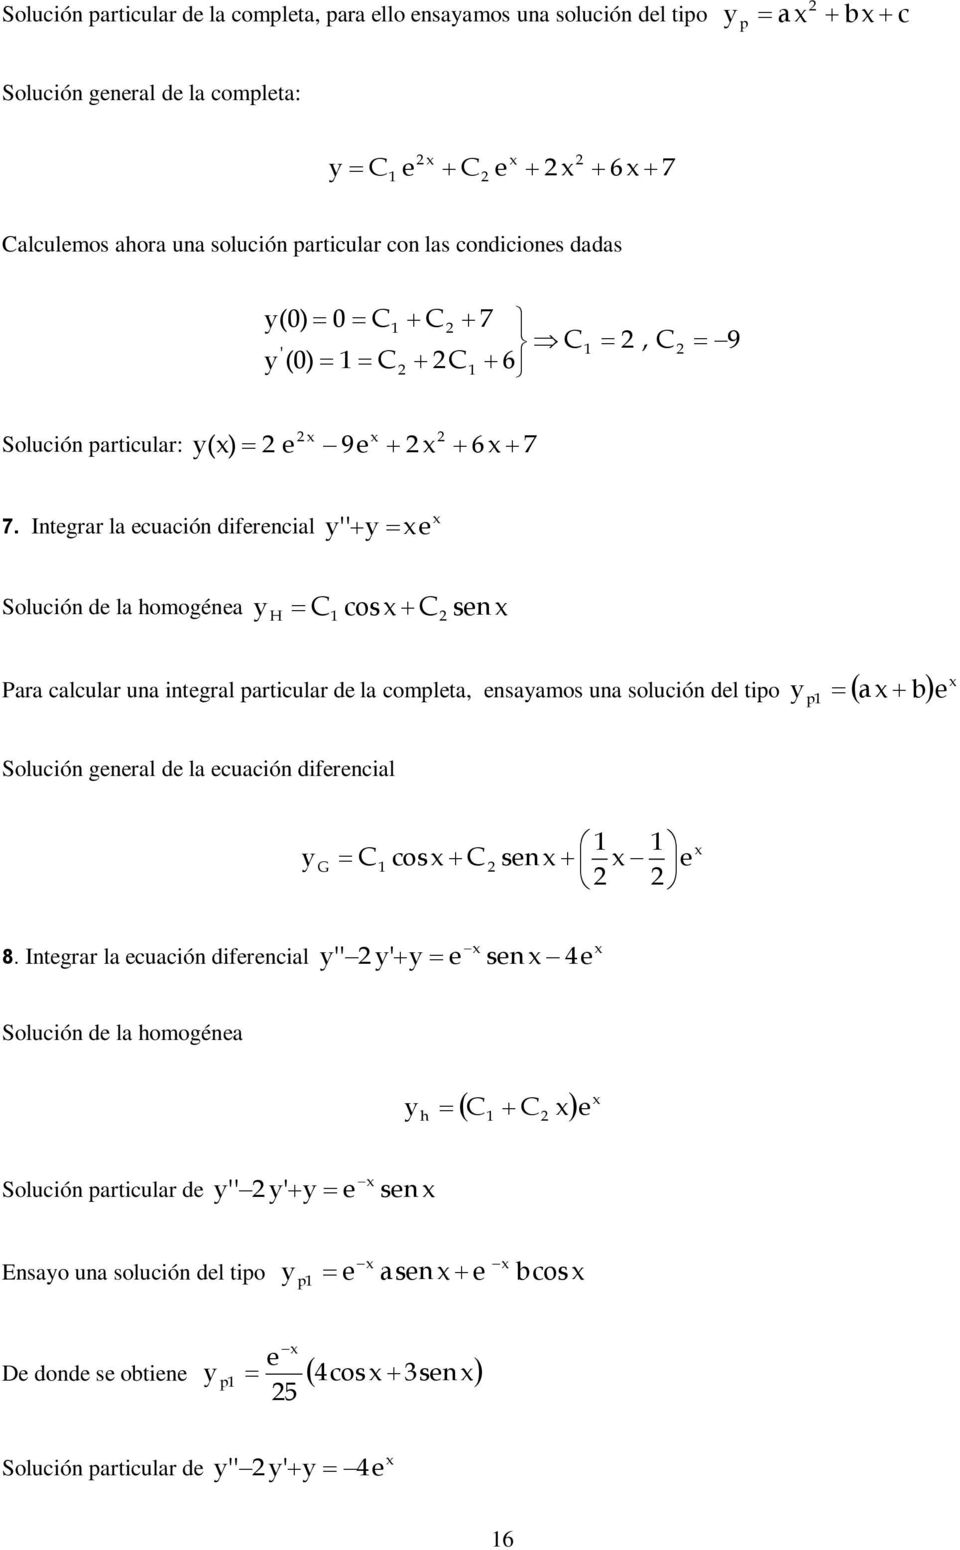 Intgrar la cuación difrncial Solución d la homogéna H cos sn Para calcular una intgral particular d la complta, nsaamos una solución dl tipo p a b